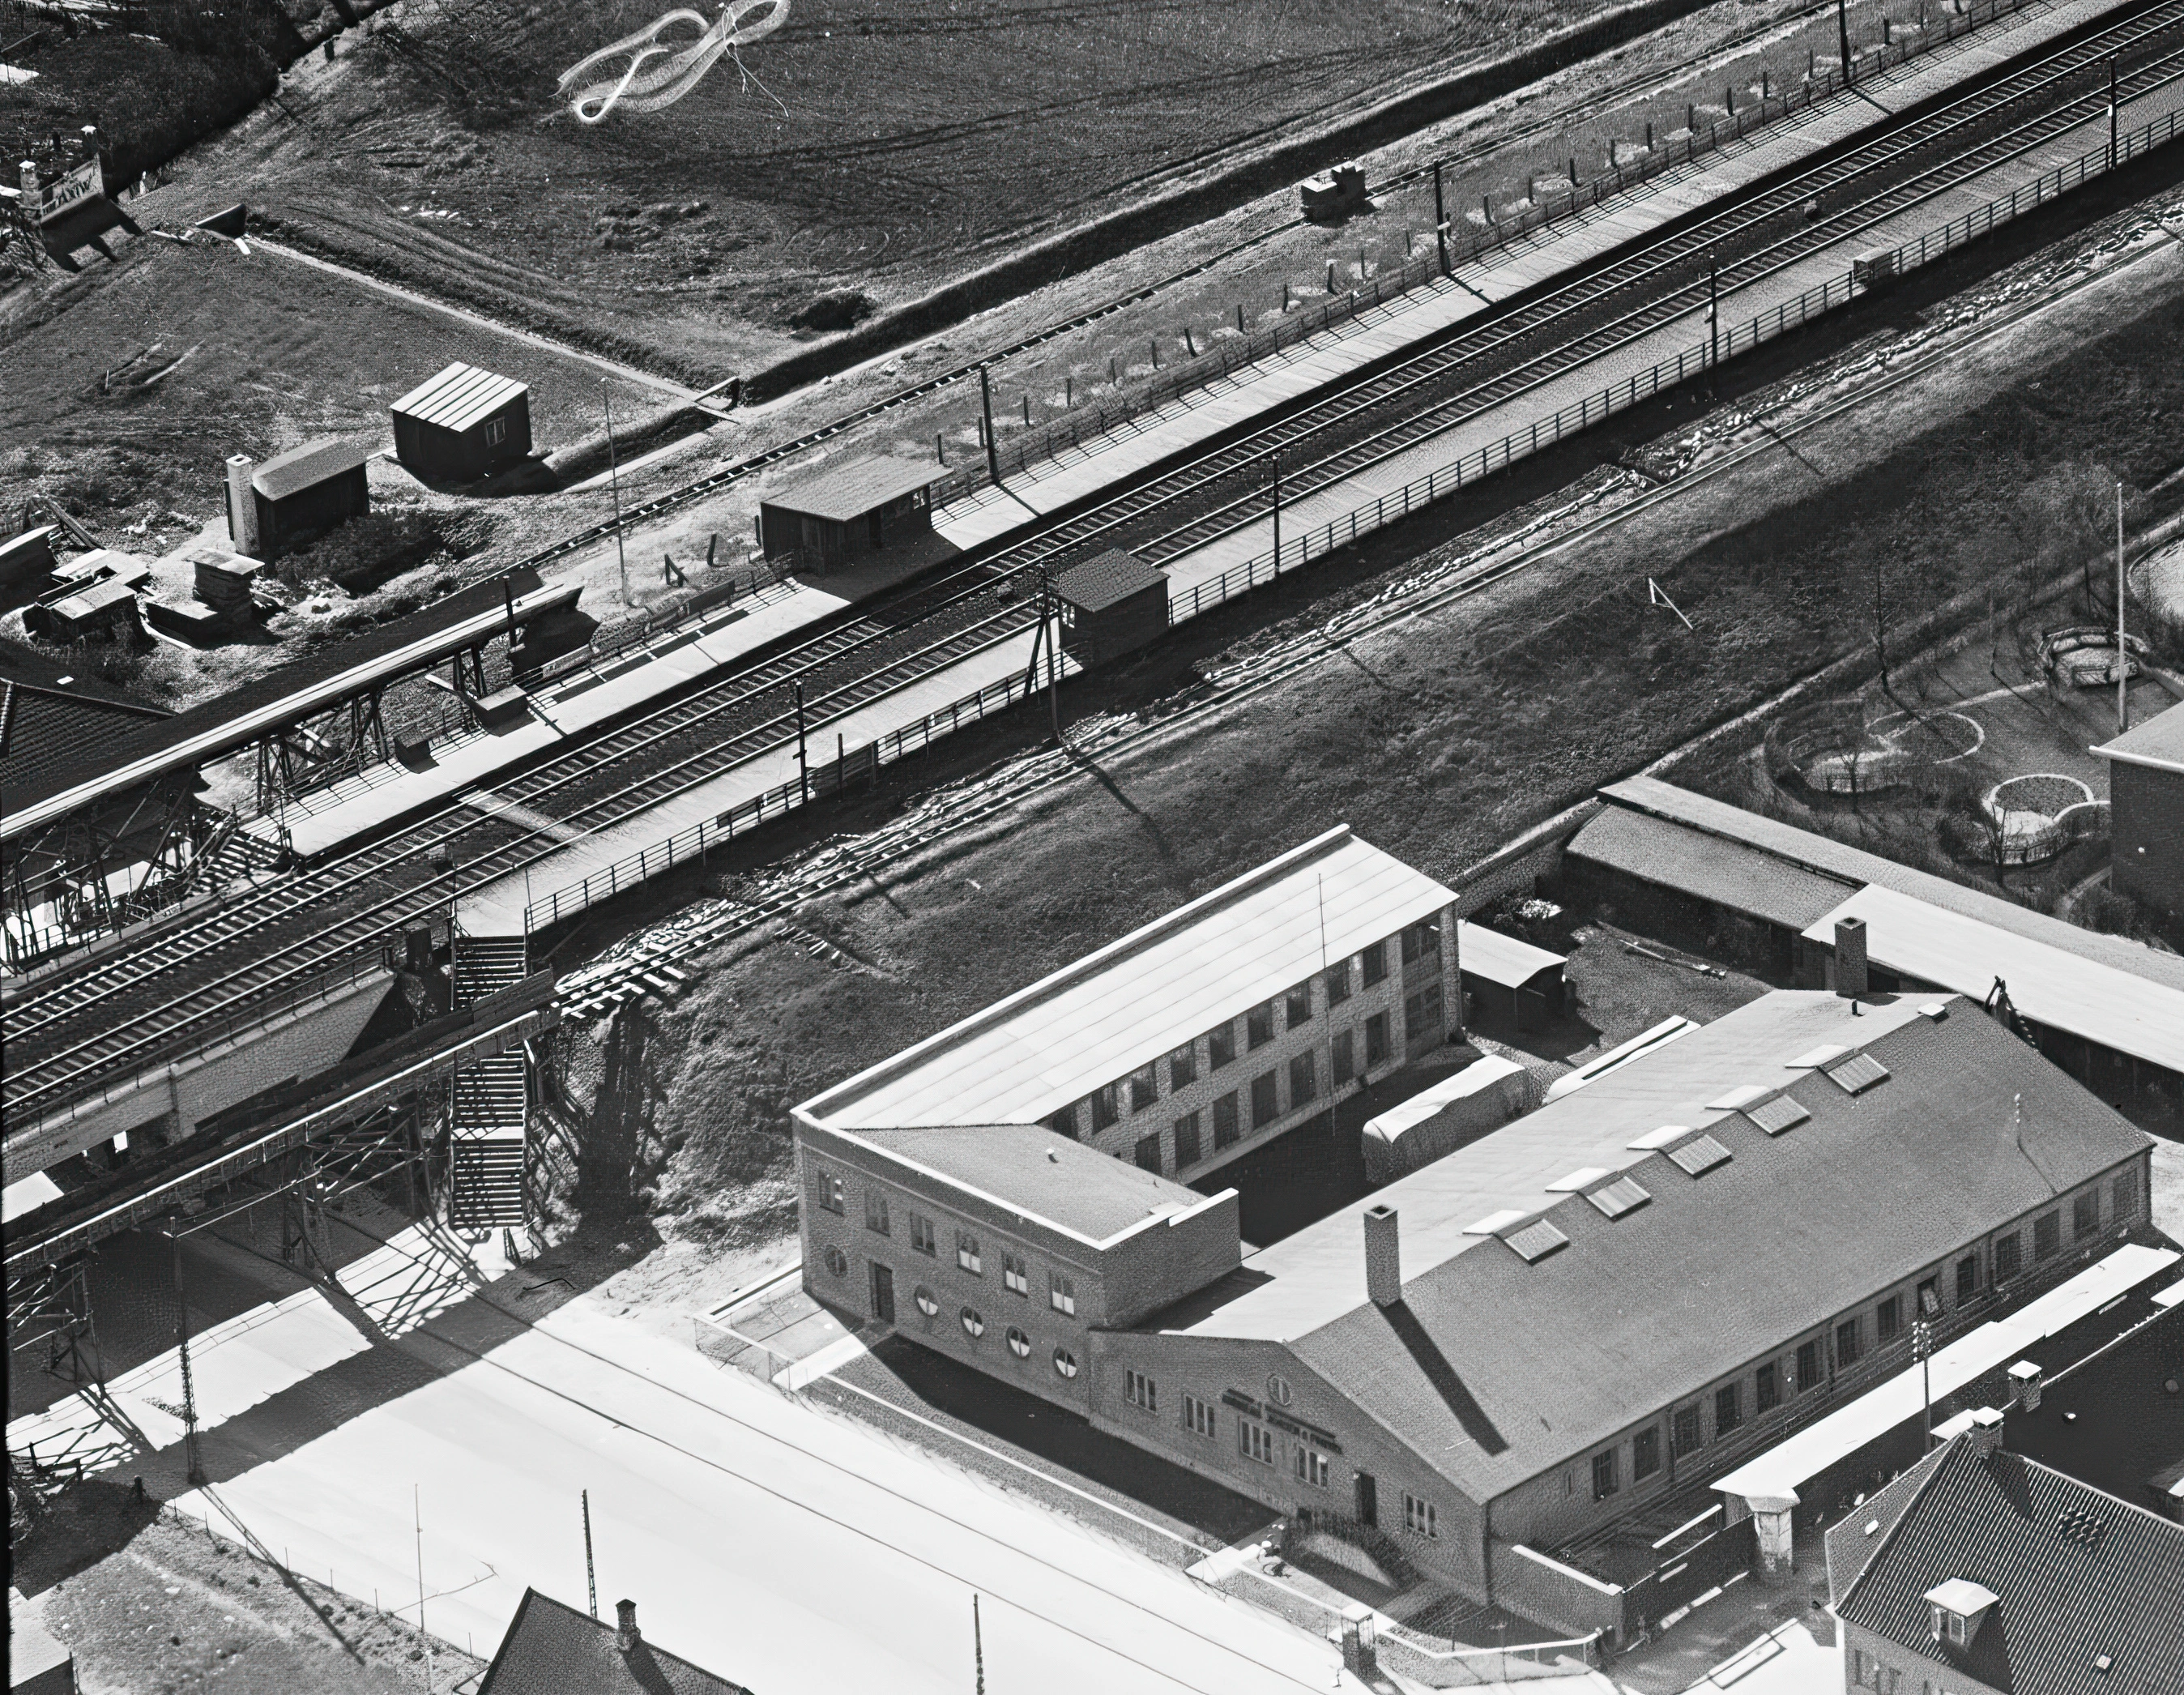 Billede af Hvidovre Station i slutningen af dens levetid og lige før udvidelse af banen og bygning af den nye station.